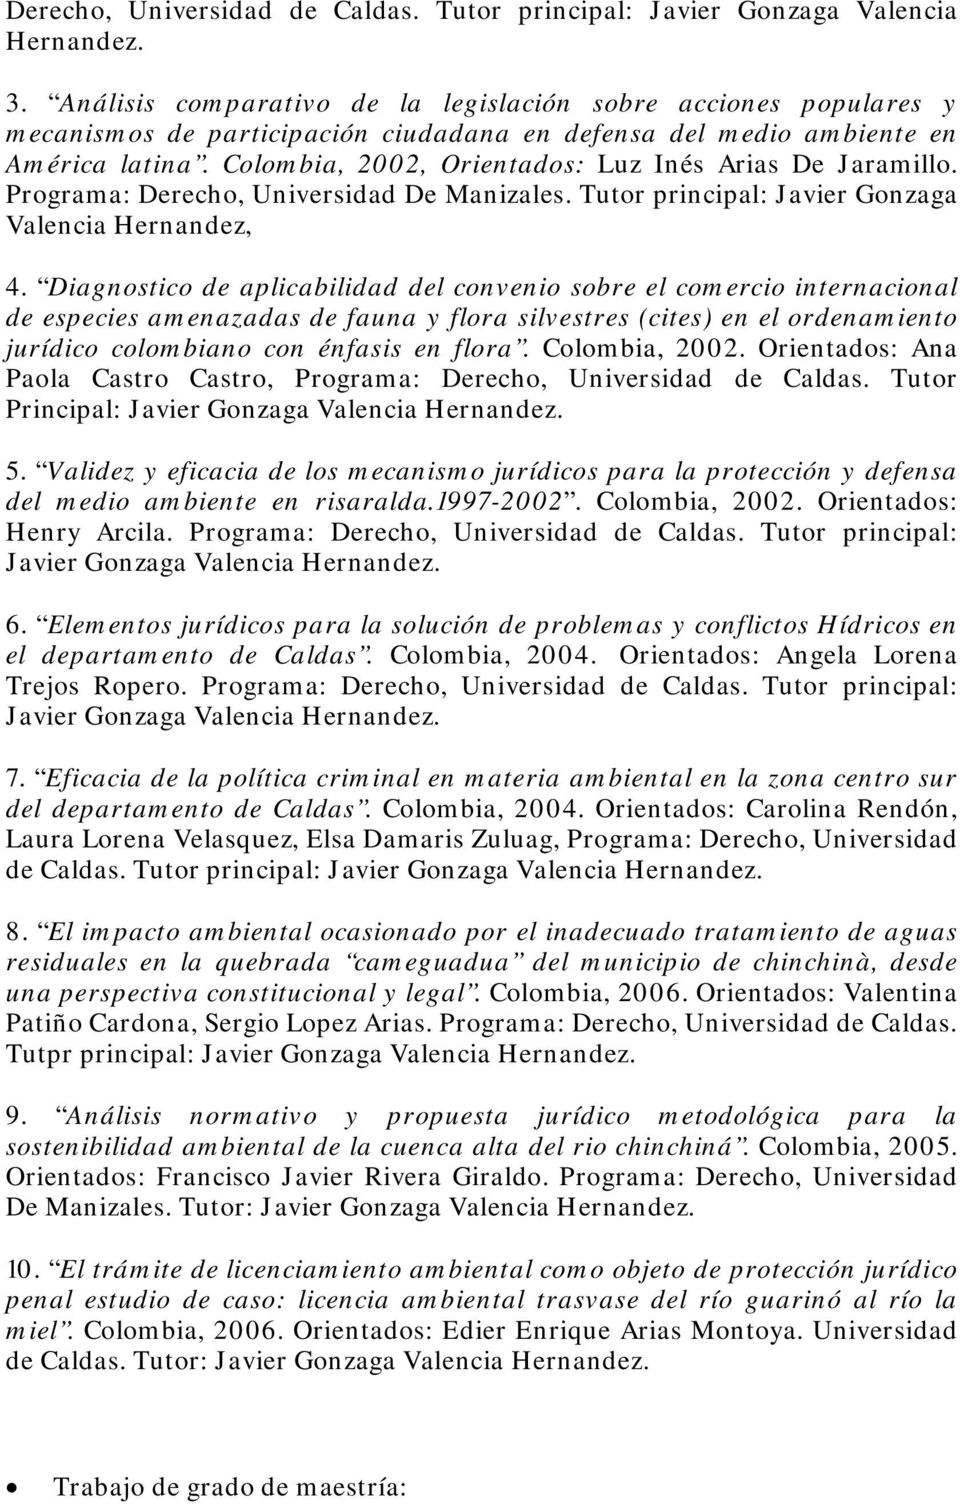 Colombia, 2002, Orientados: Luz Inés Arias De Jaramillo. Programa: Derecho, Universidad De Manizales. Tutor principal: Javier Gonzaga Valencia Hernandez, 4.